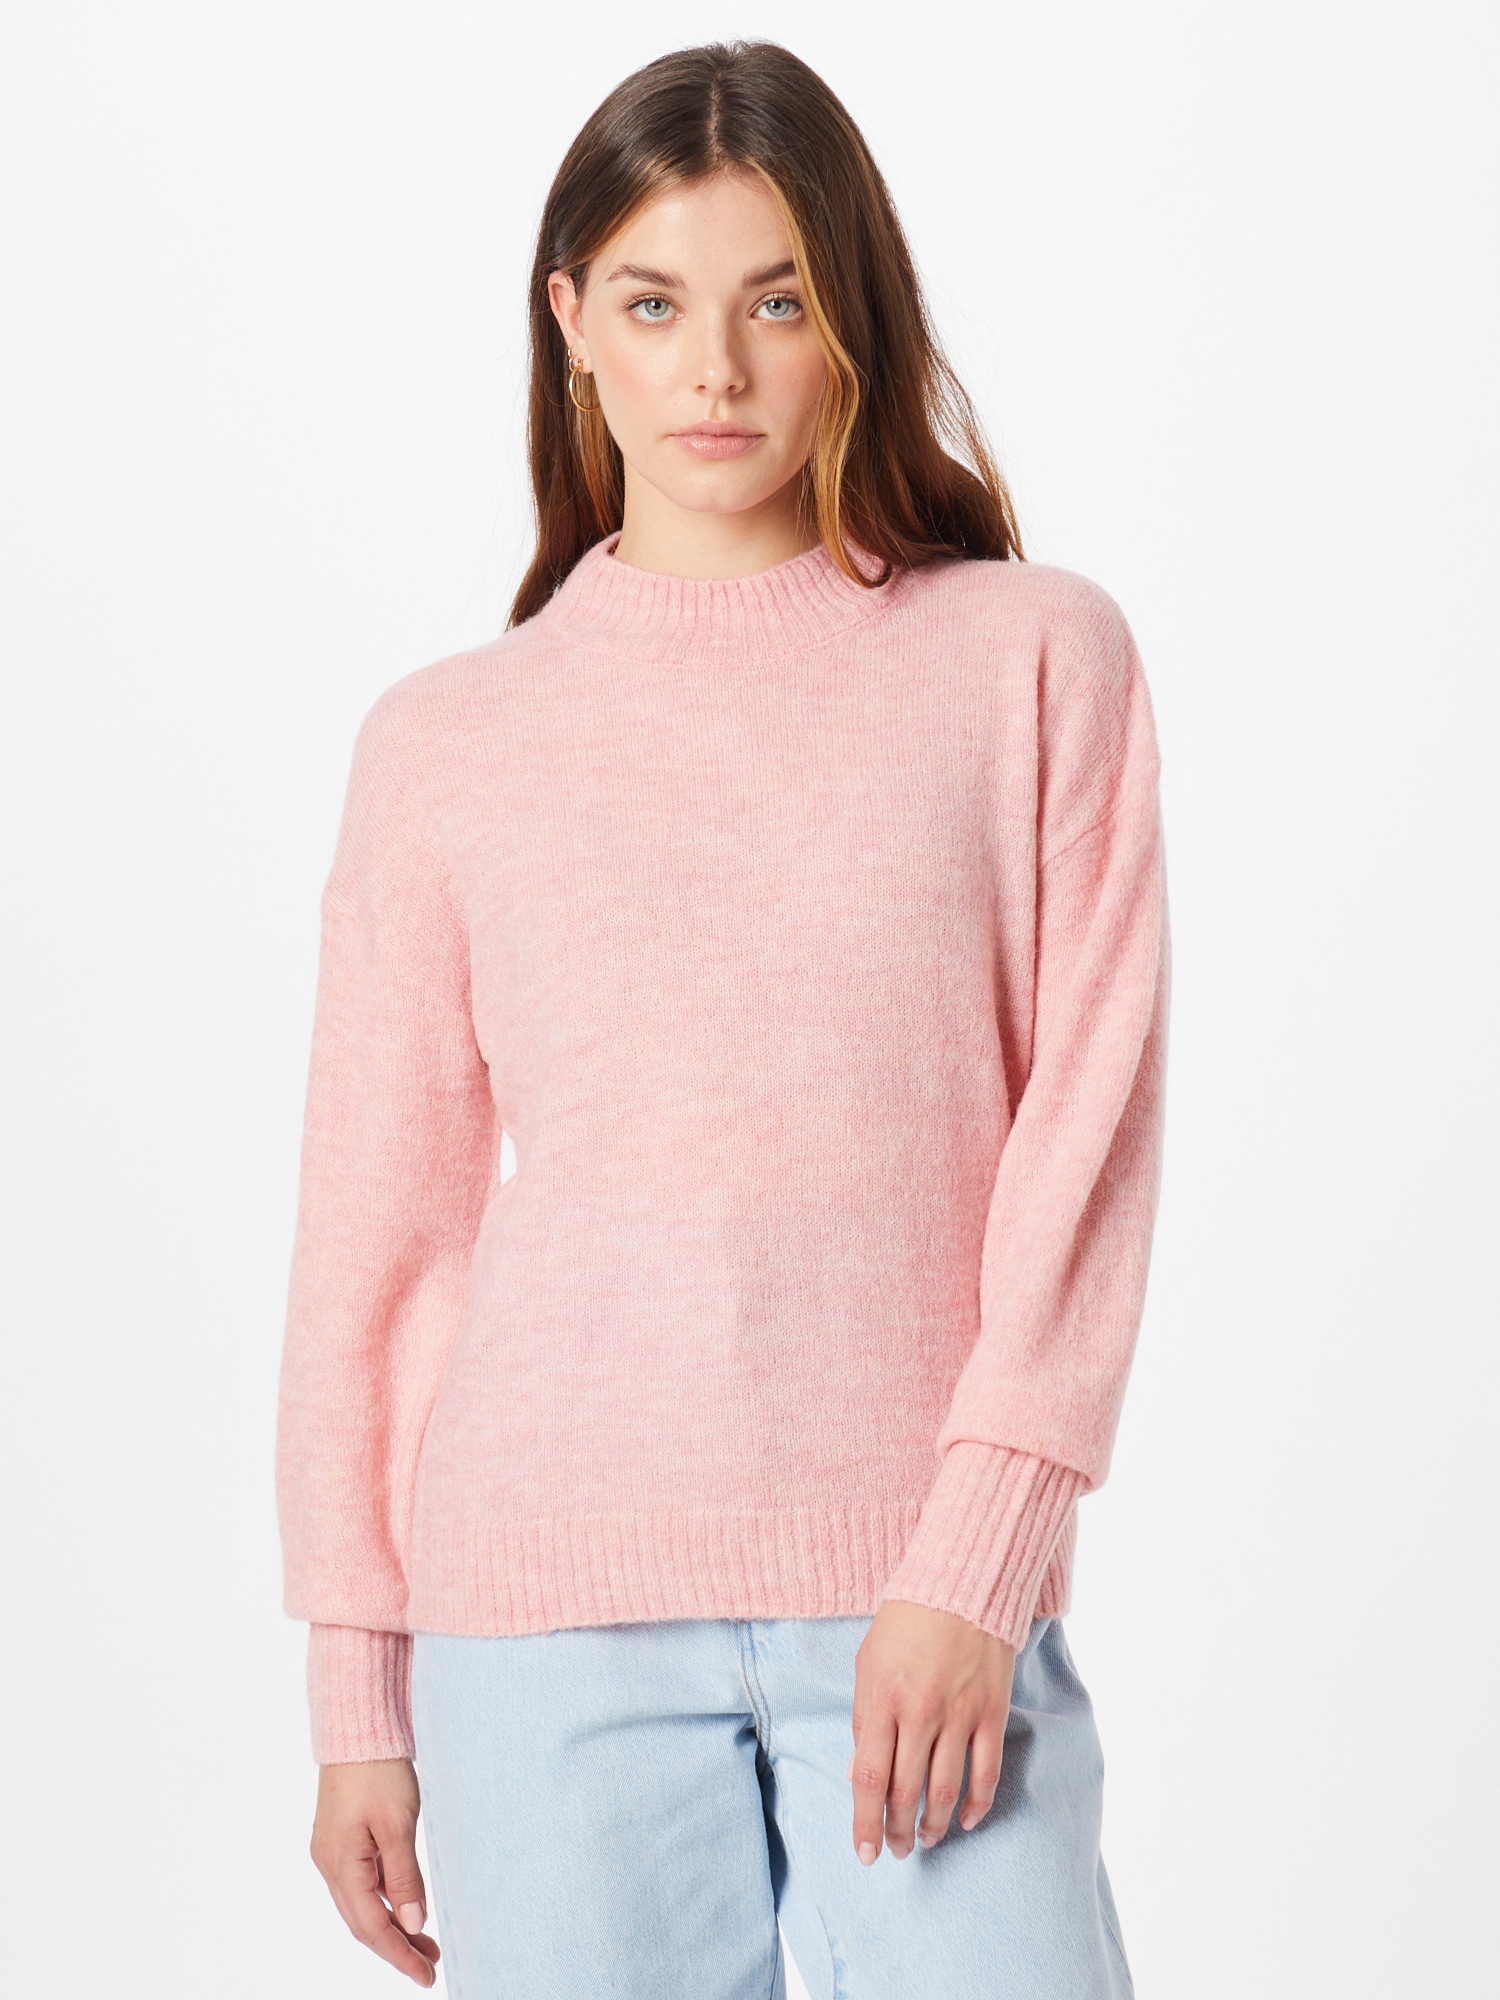 Plus size sKr5g ICHI Sweter w kolorze Różowym 